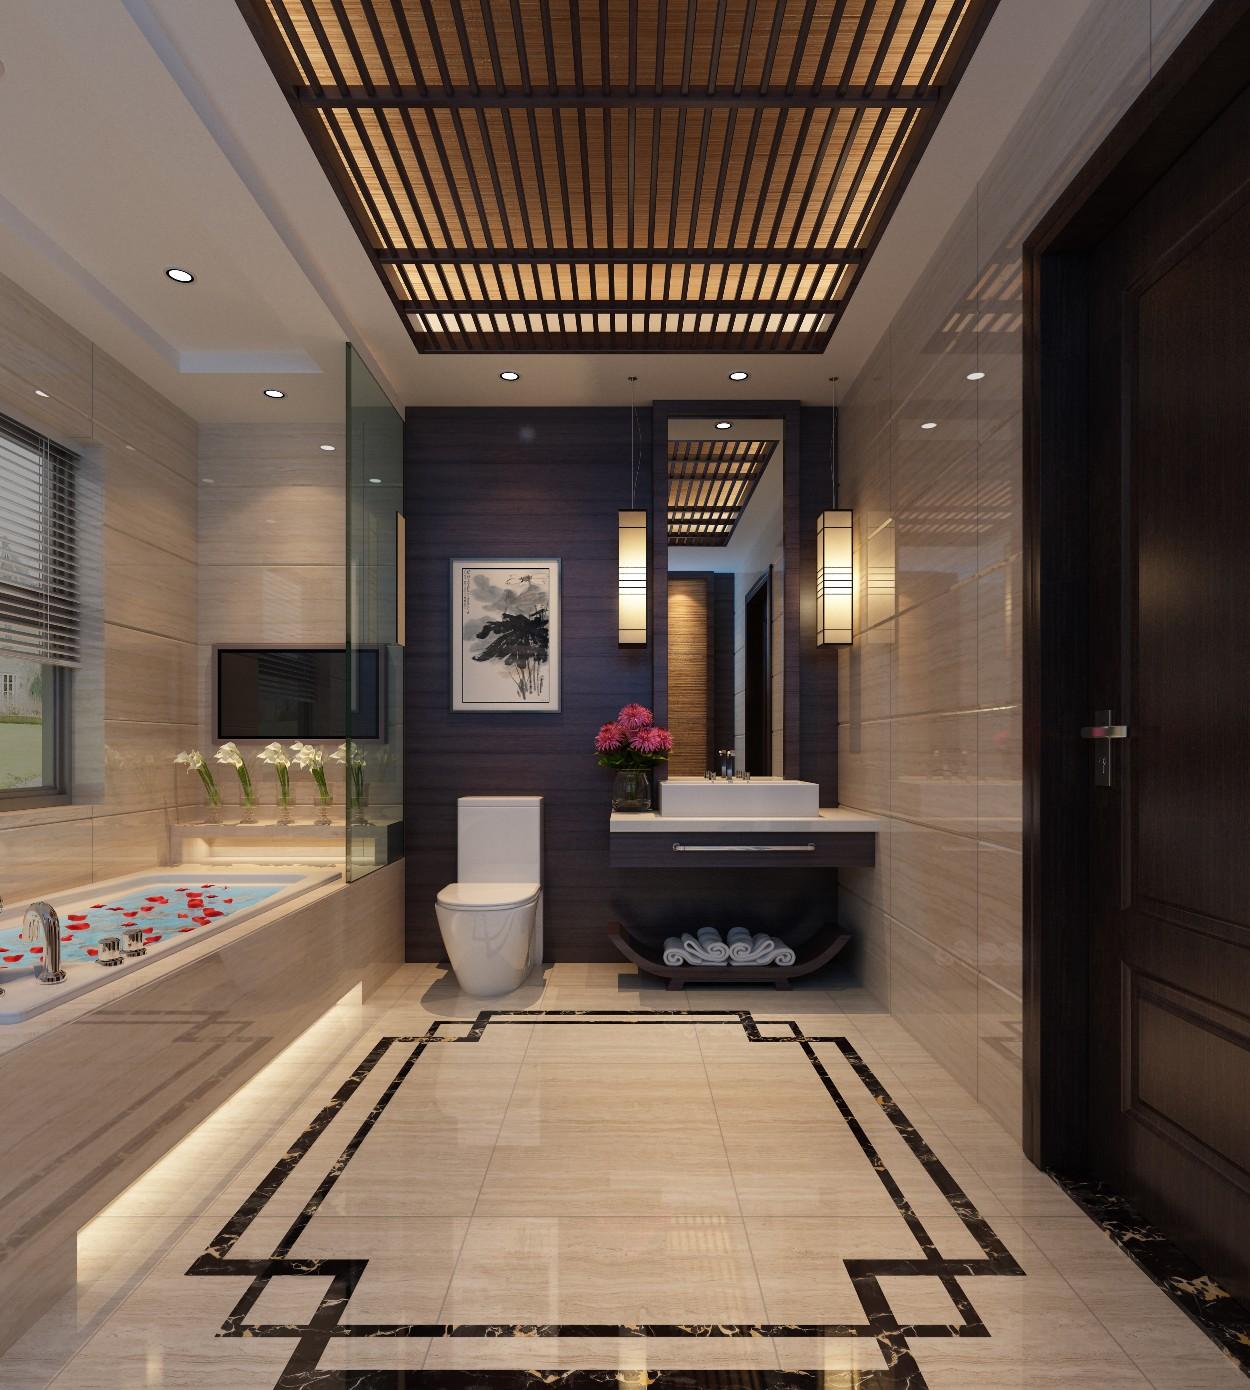 客厅拼花地砖800x800 新中式餐厅走廊拼花瓷砖玄关水刀拼花地板砖-阿里巴巴